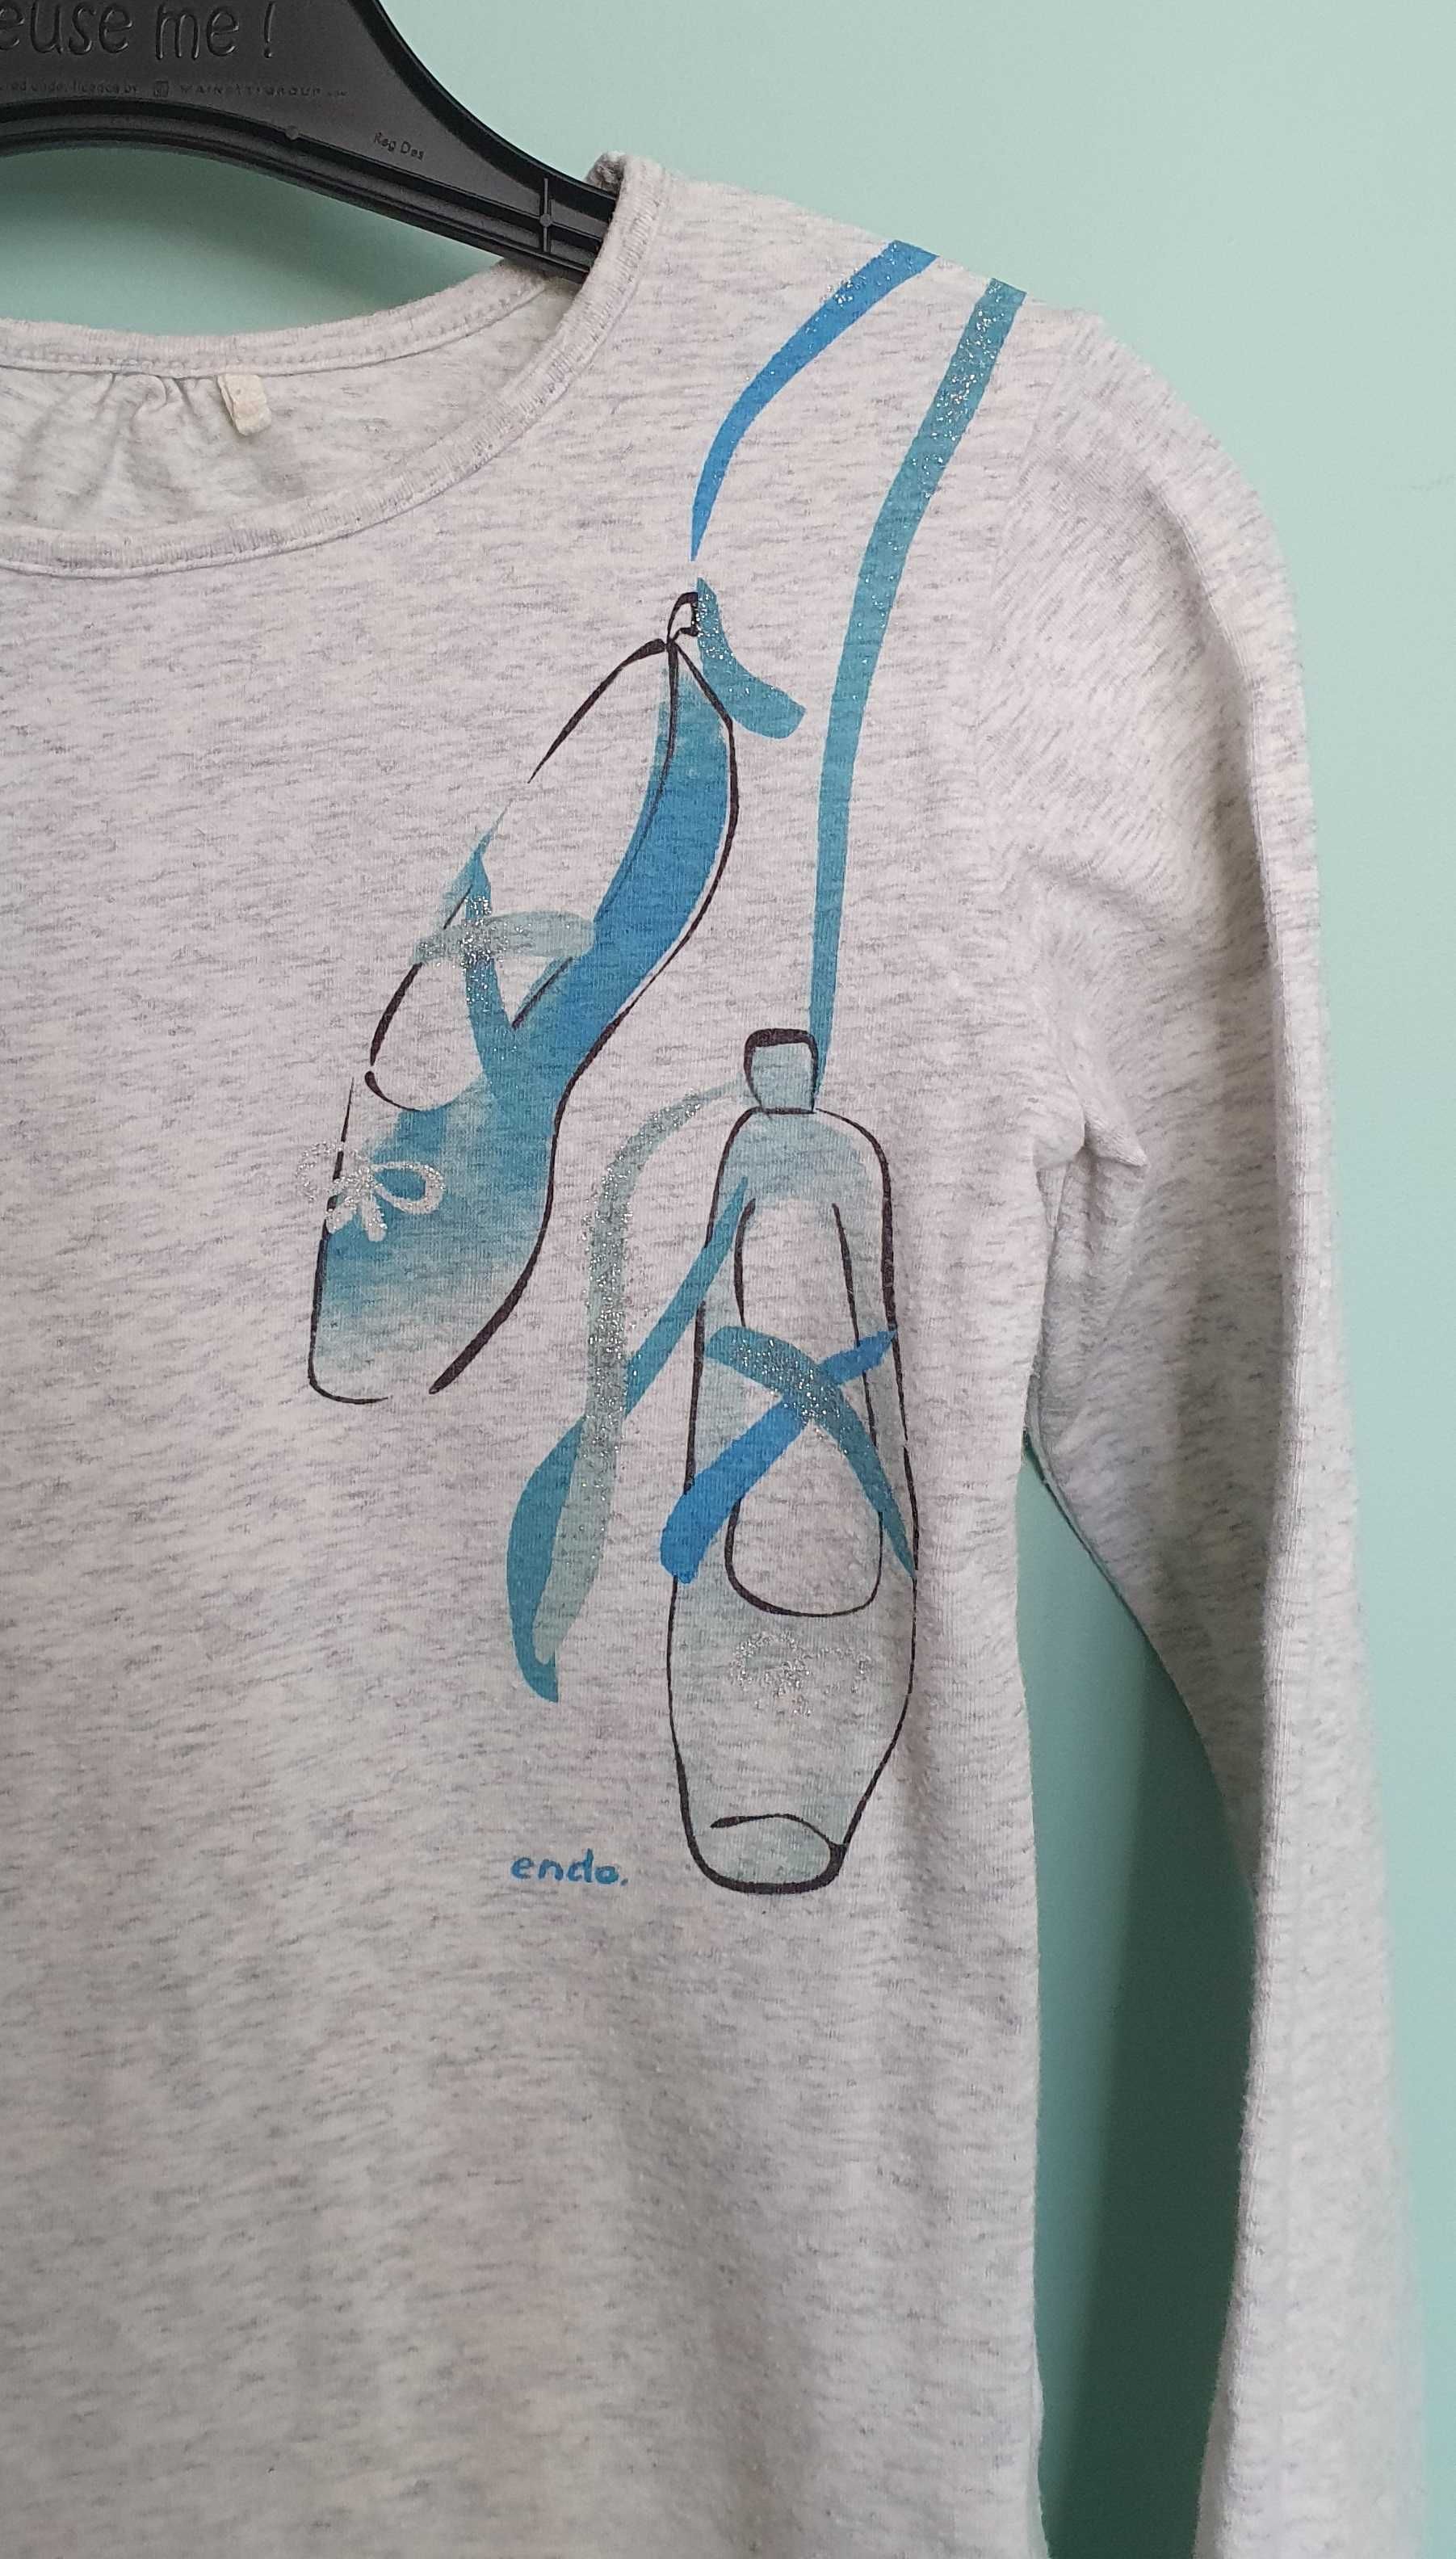 Bluzka Endo, bluza, rozmiar 128 cm (7 - 8 lat), dziewczęca.